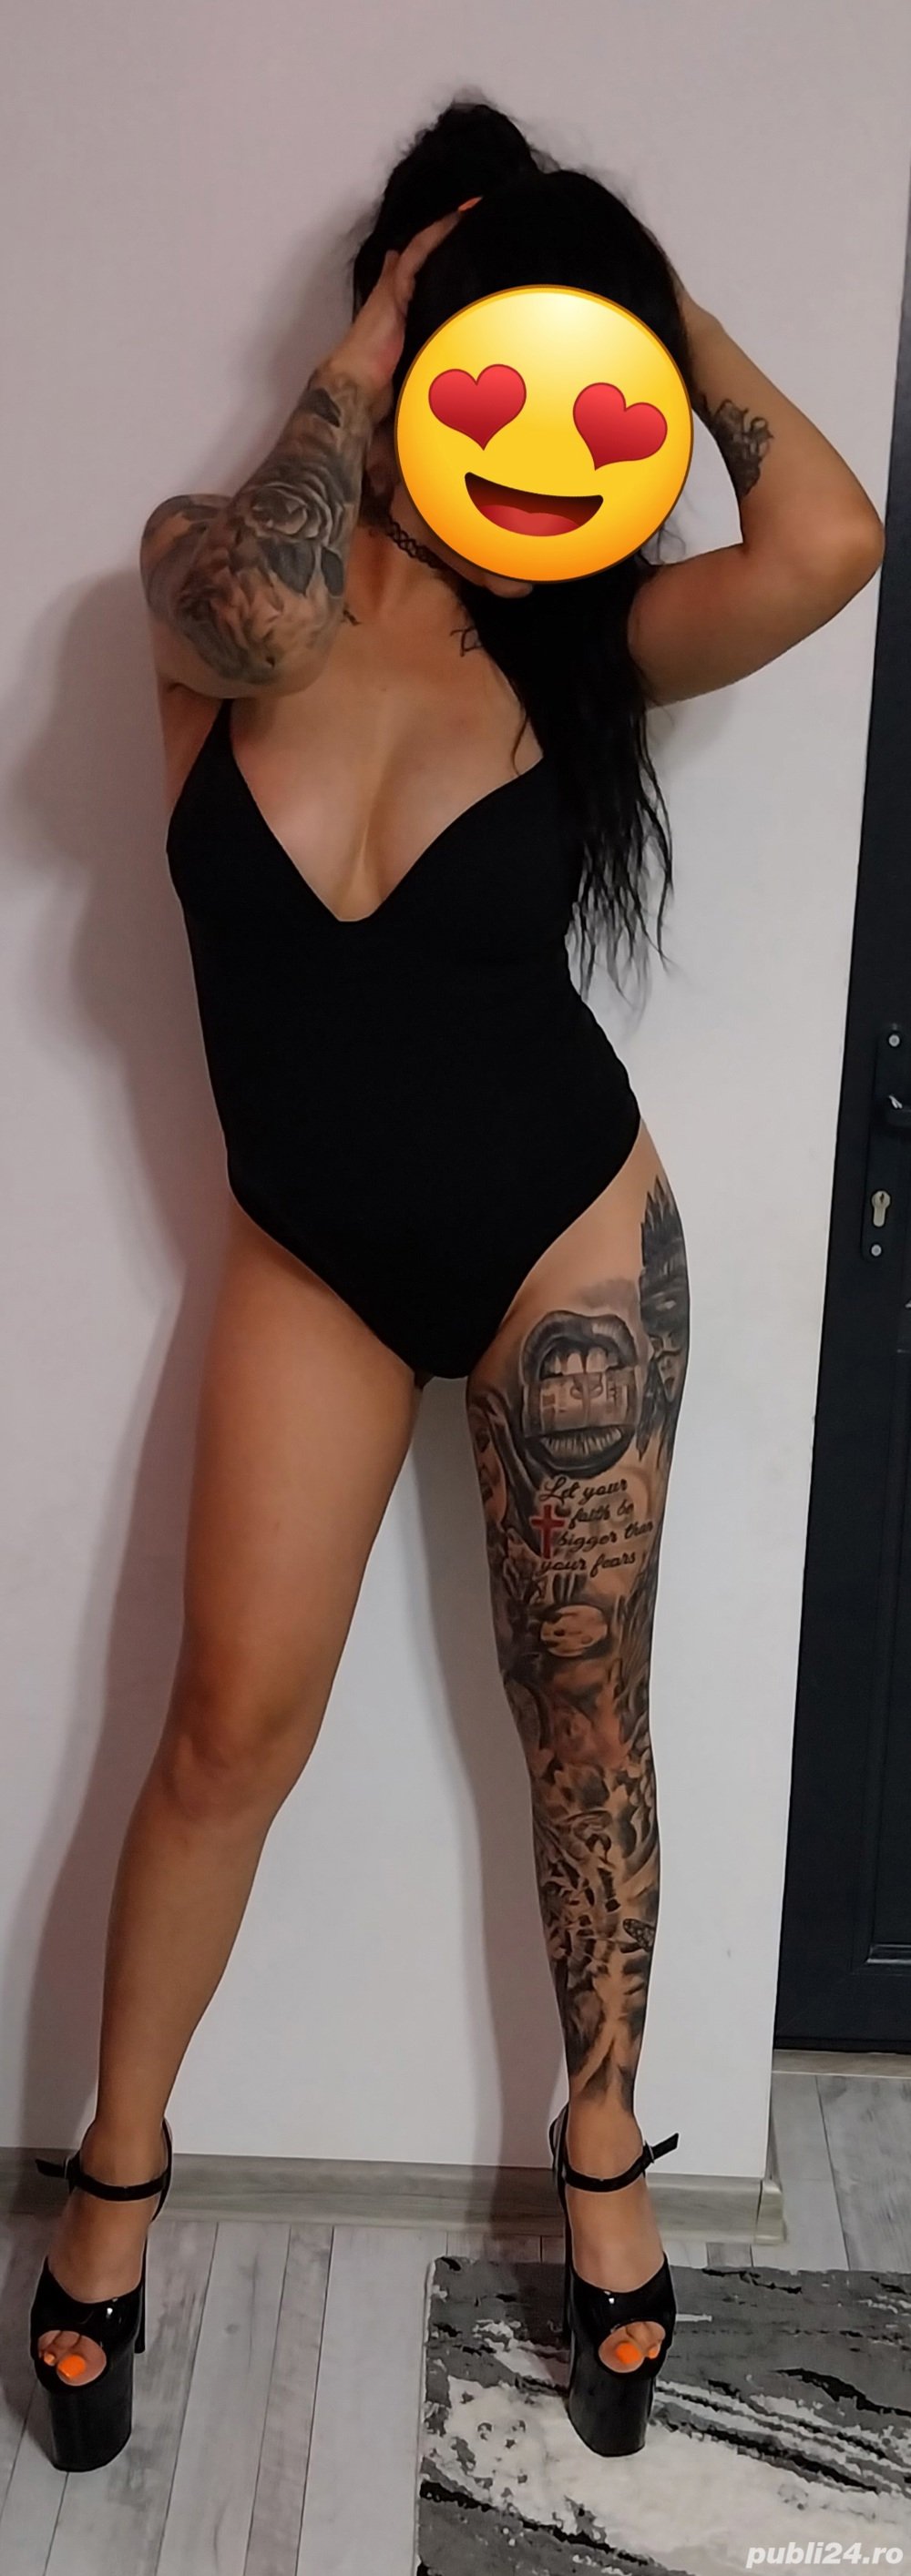 Rebeca confirm tatto  - imagine 1